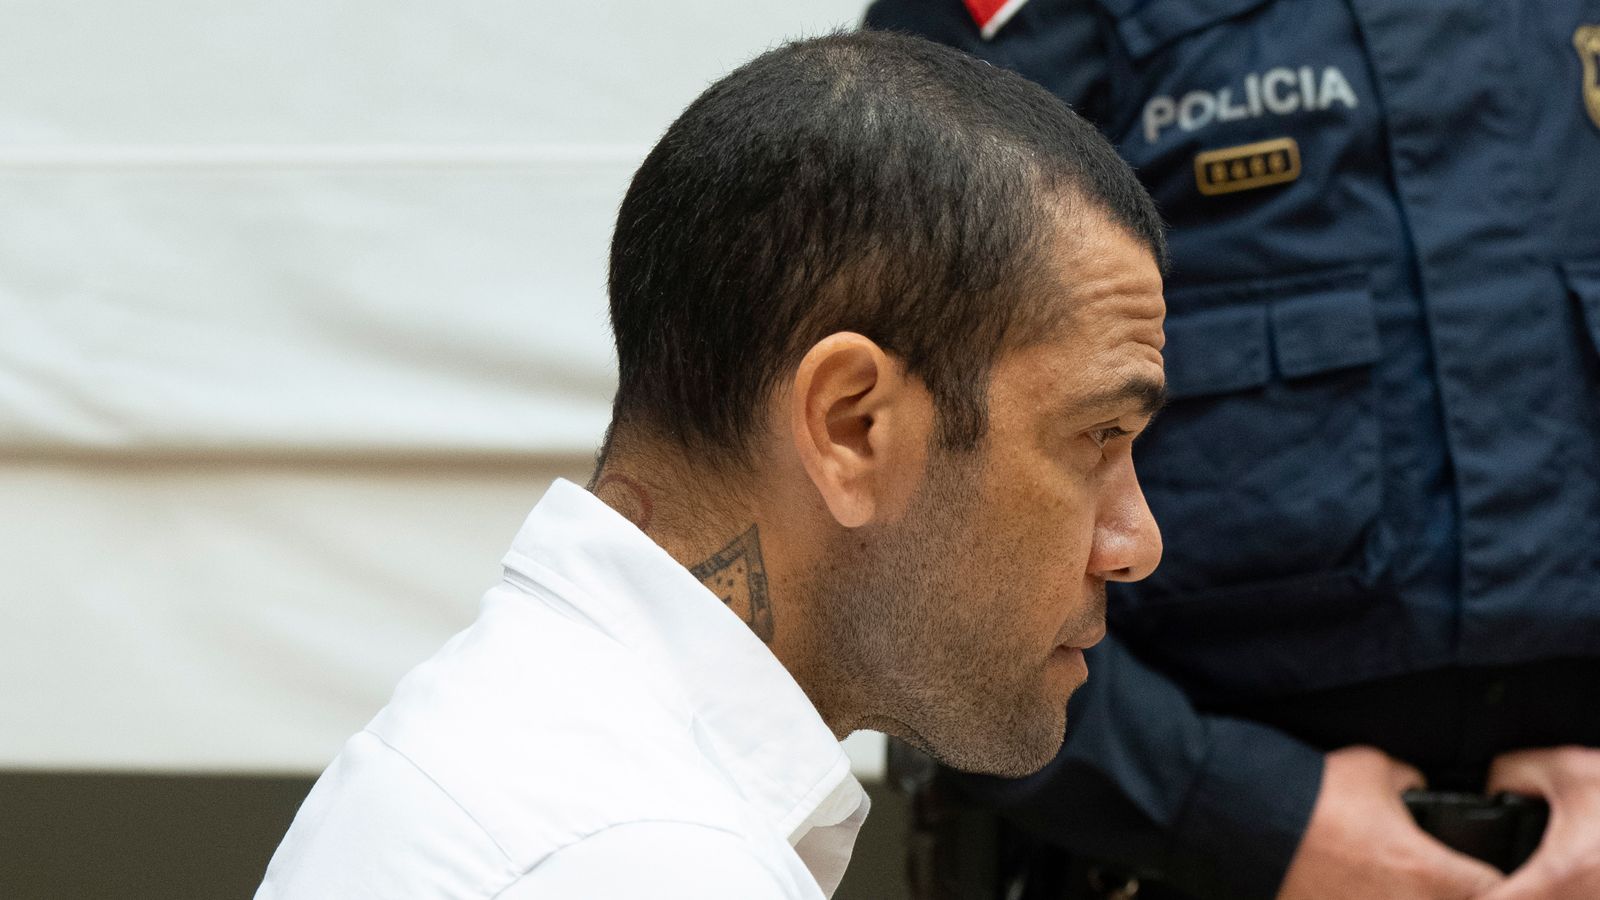 Dani Alves : l’ancien défenseur de Barcelone et du Brésil condamné à quatre ans et demi de prison après avoir été reconnu coupable d’agression sexuelle |  Actualités footballistiques